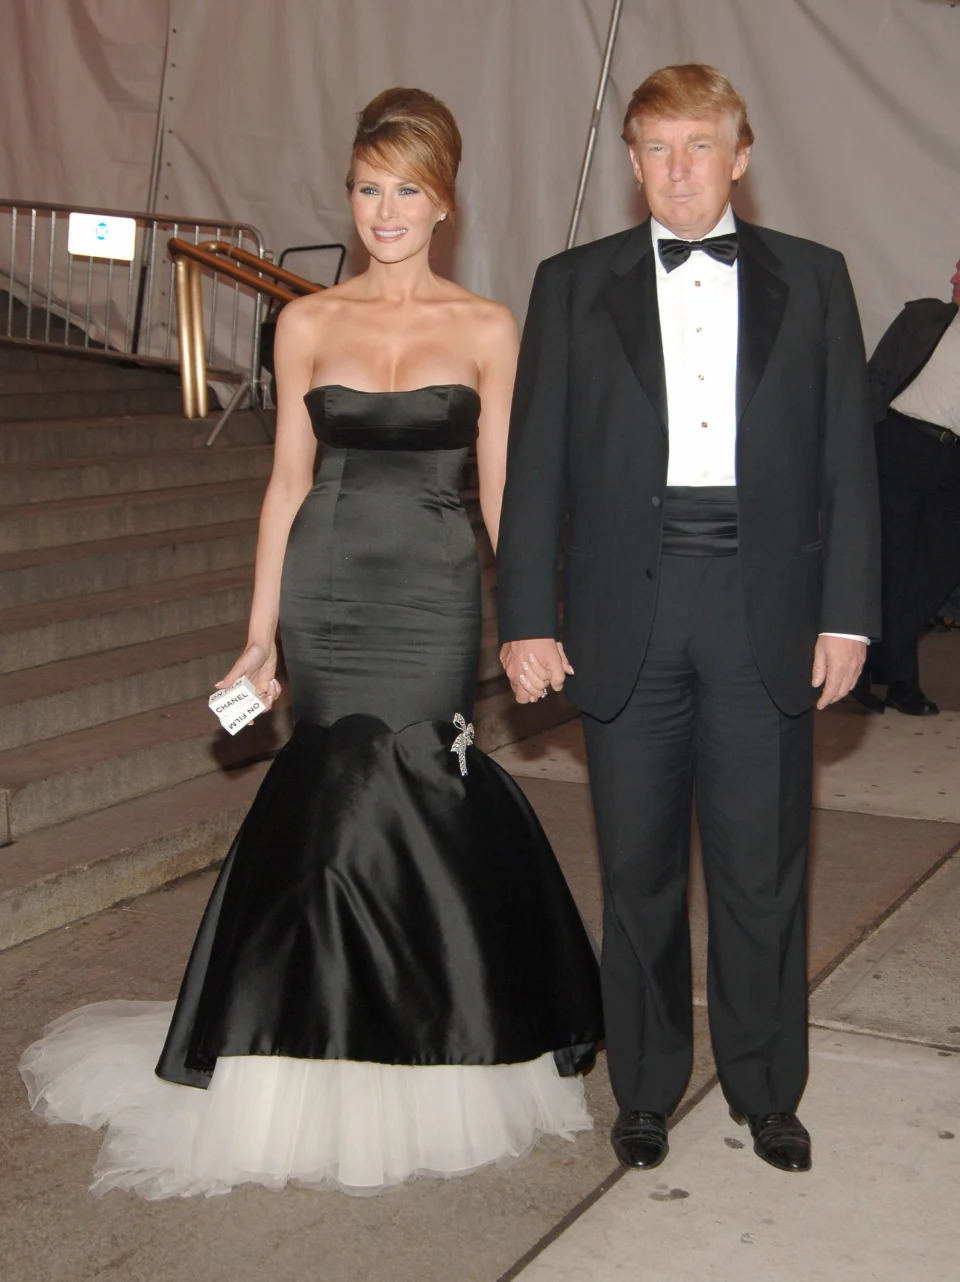 Donald Trump and Melania Trump at the Met Gala in 2005.